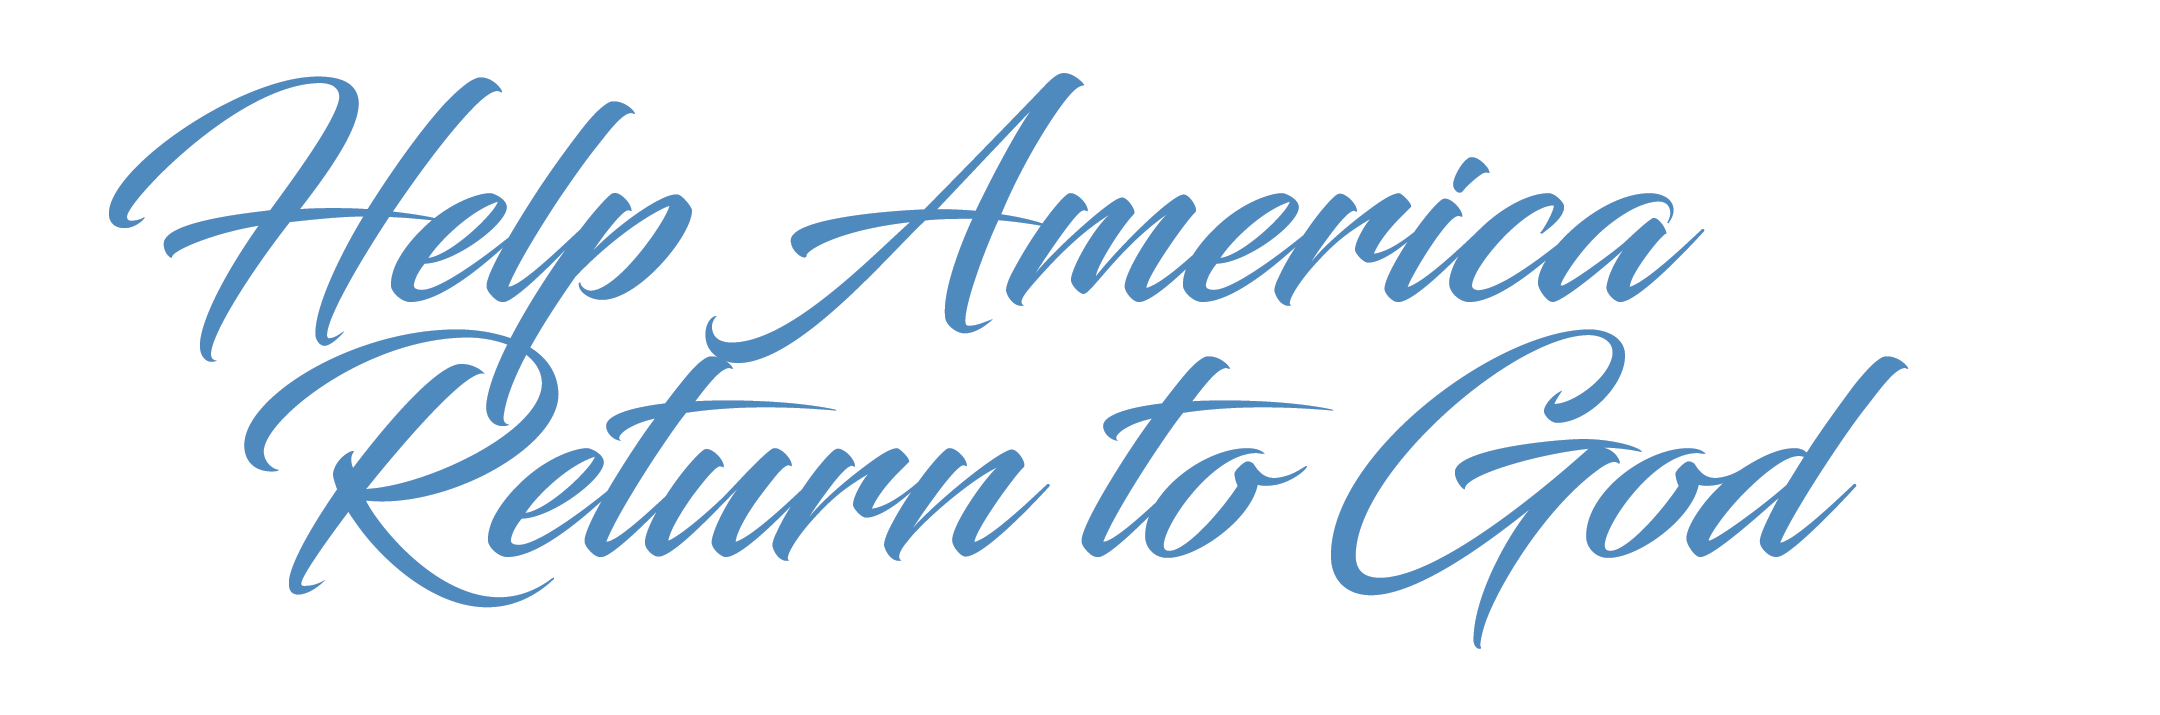 Help America Return to God